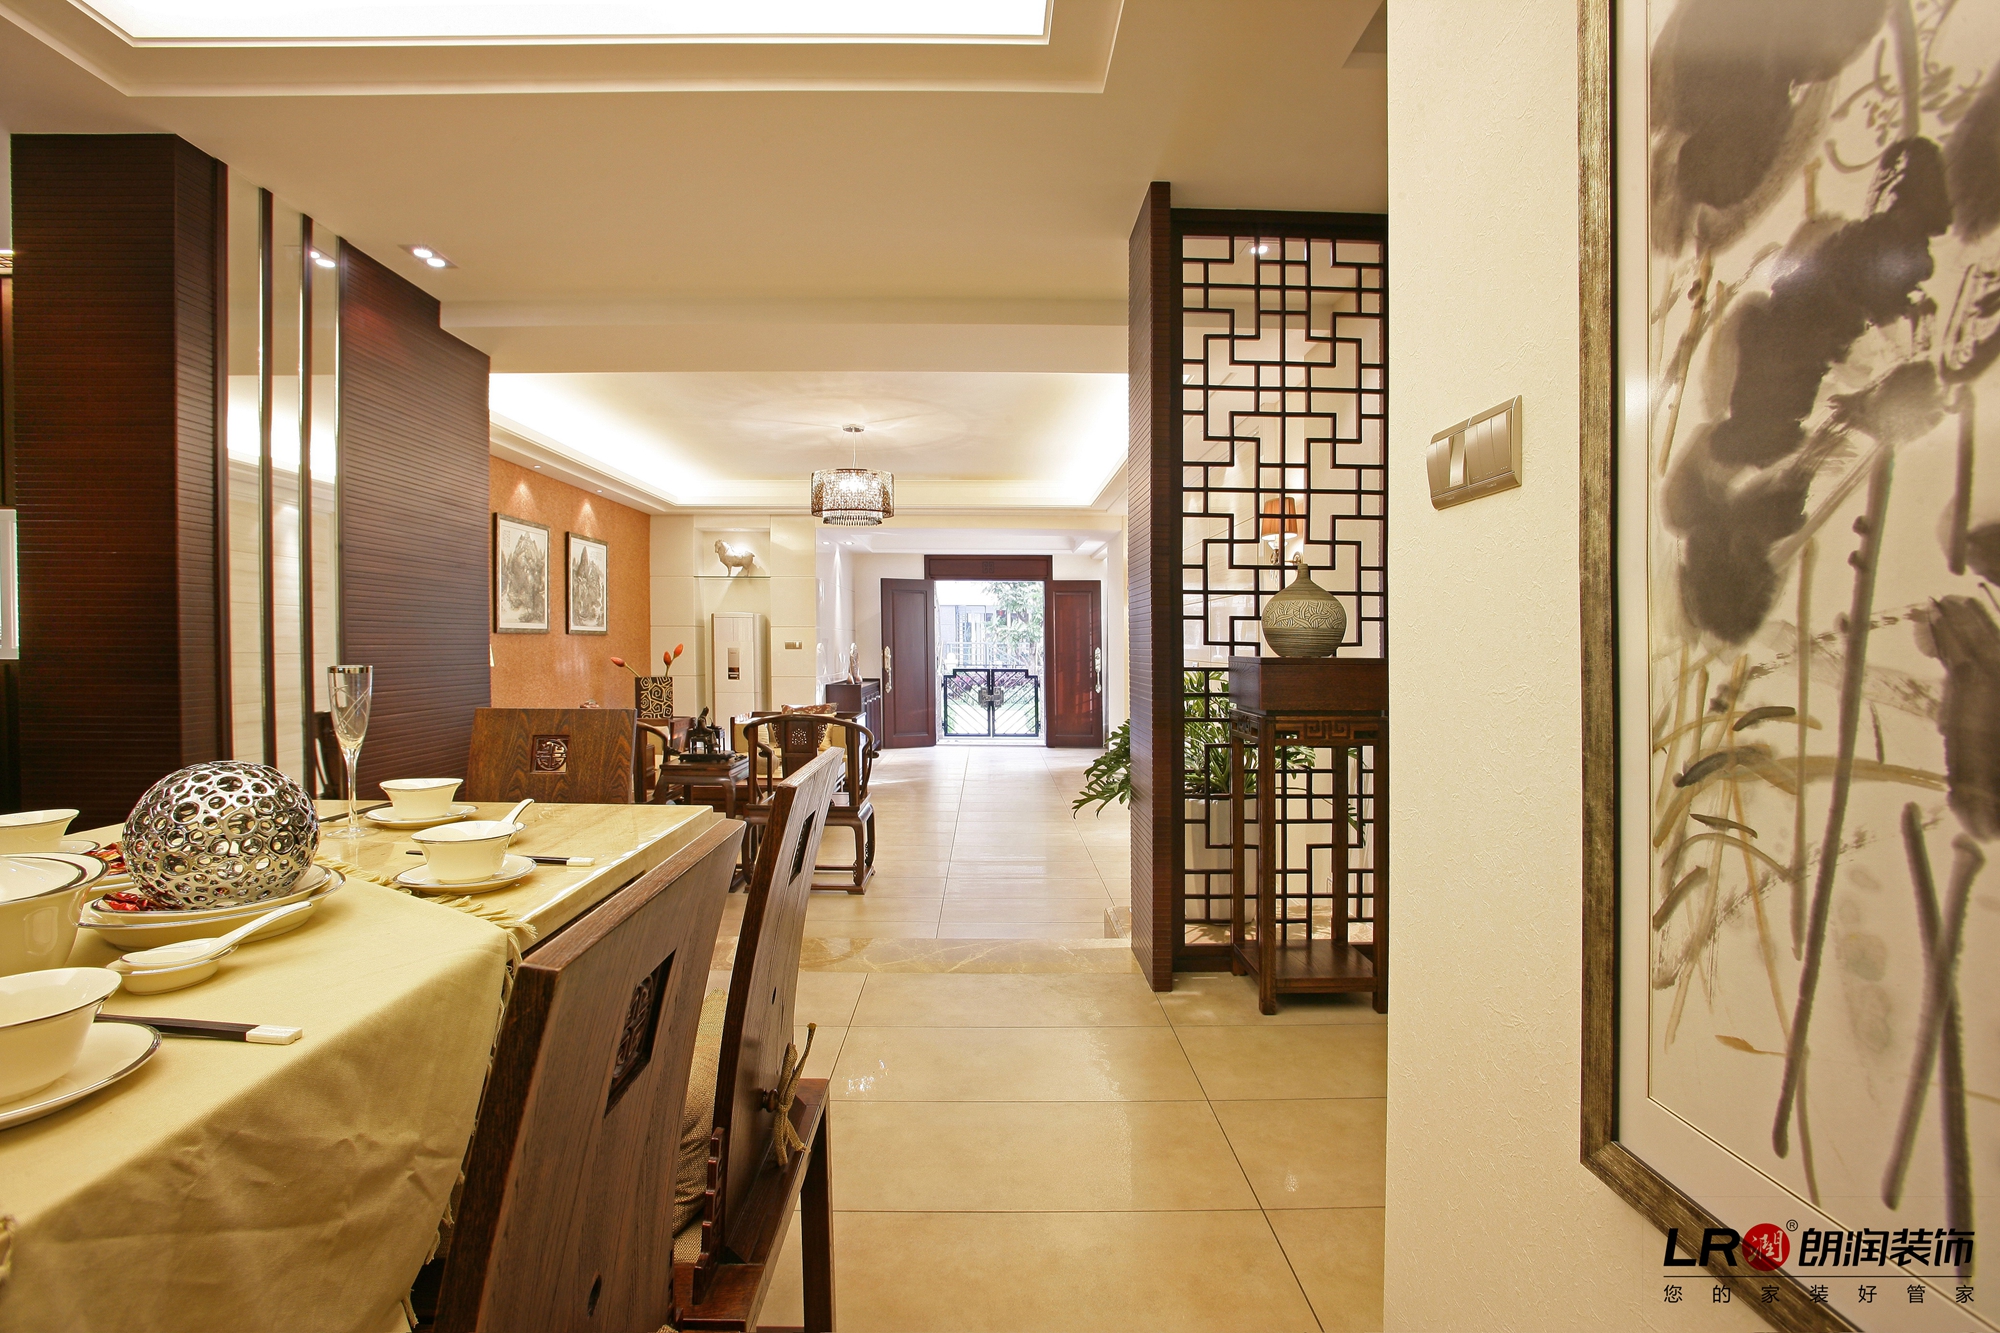 古色古香 中式 复式 风雅 古典 餐厅图片来自用户5156624388在精致风雅古色古香中式风格的分享